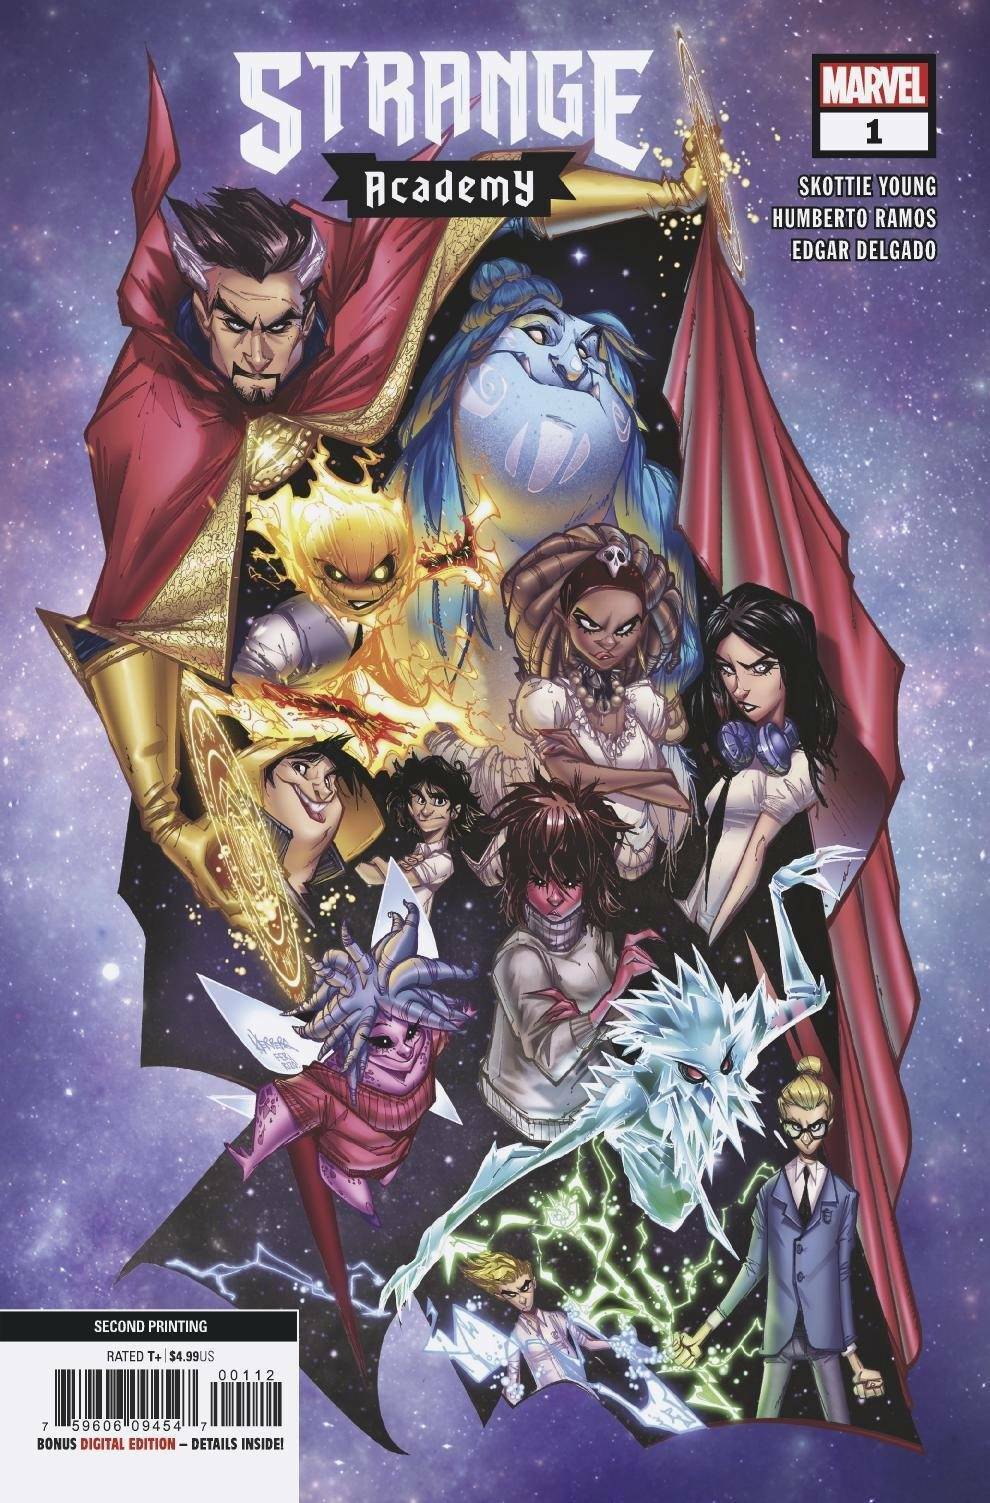 Strange Academy 1,2,3,4,5,6,7,8,9,10,11,13,17 (U Pick) Marvel Comics NM